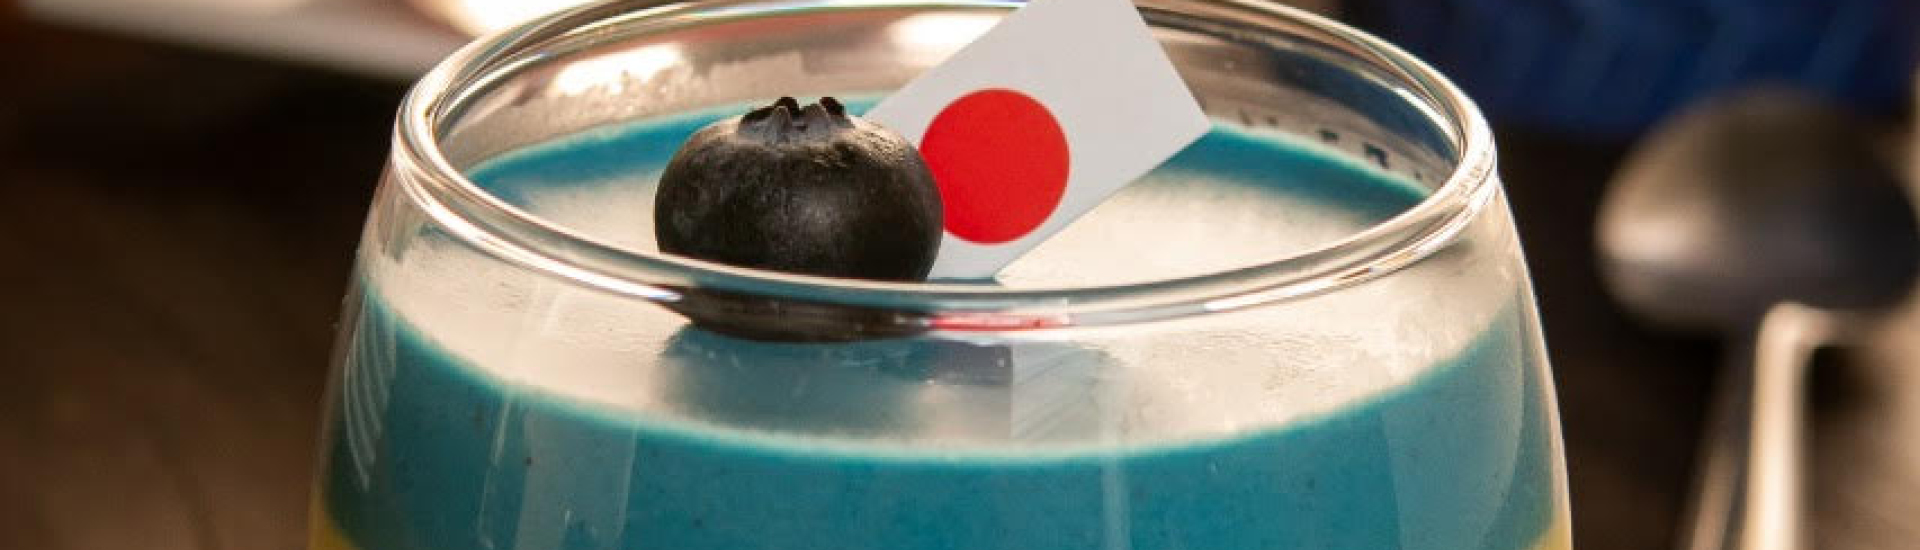 Pote de vidro com mousse azul, enfeitado no topo com uma frutinha mirtilo e uma mini bandeira do Japão.